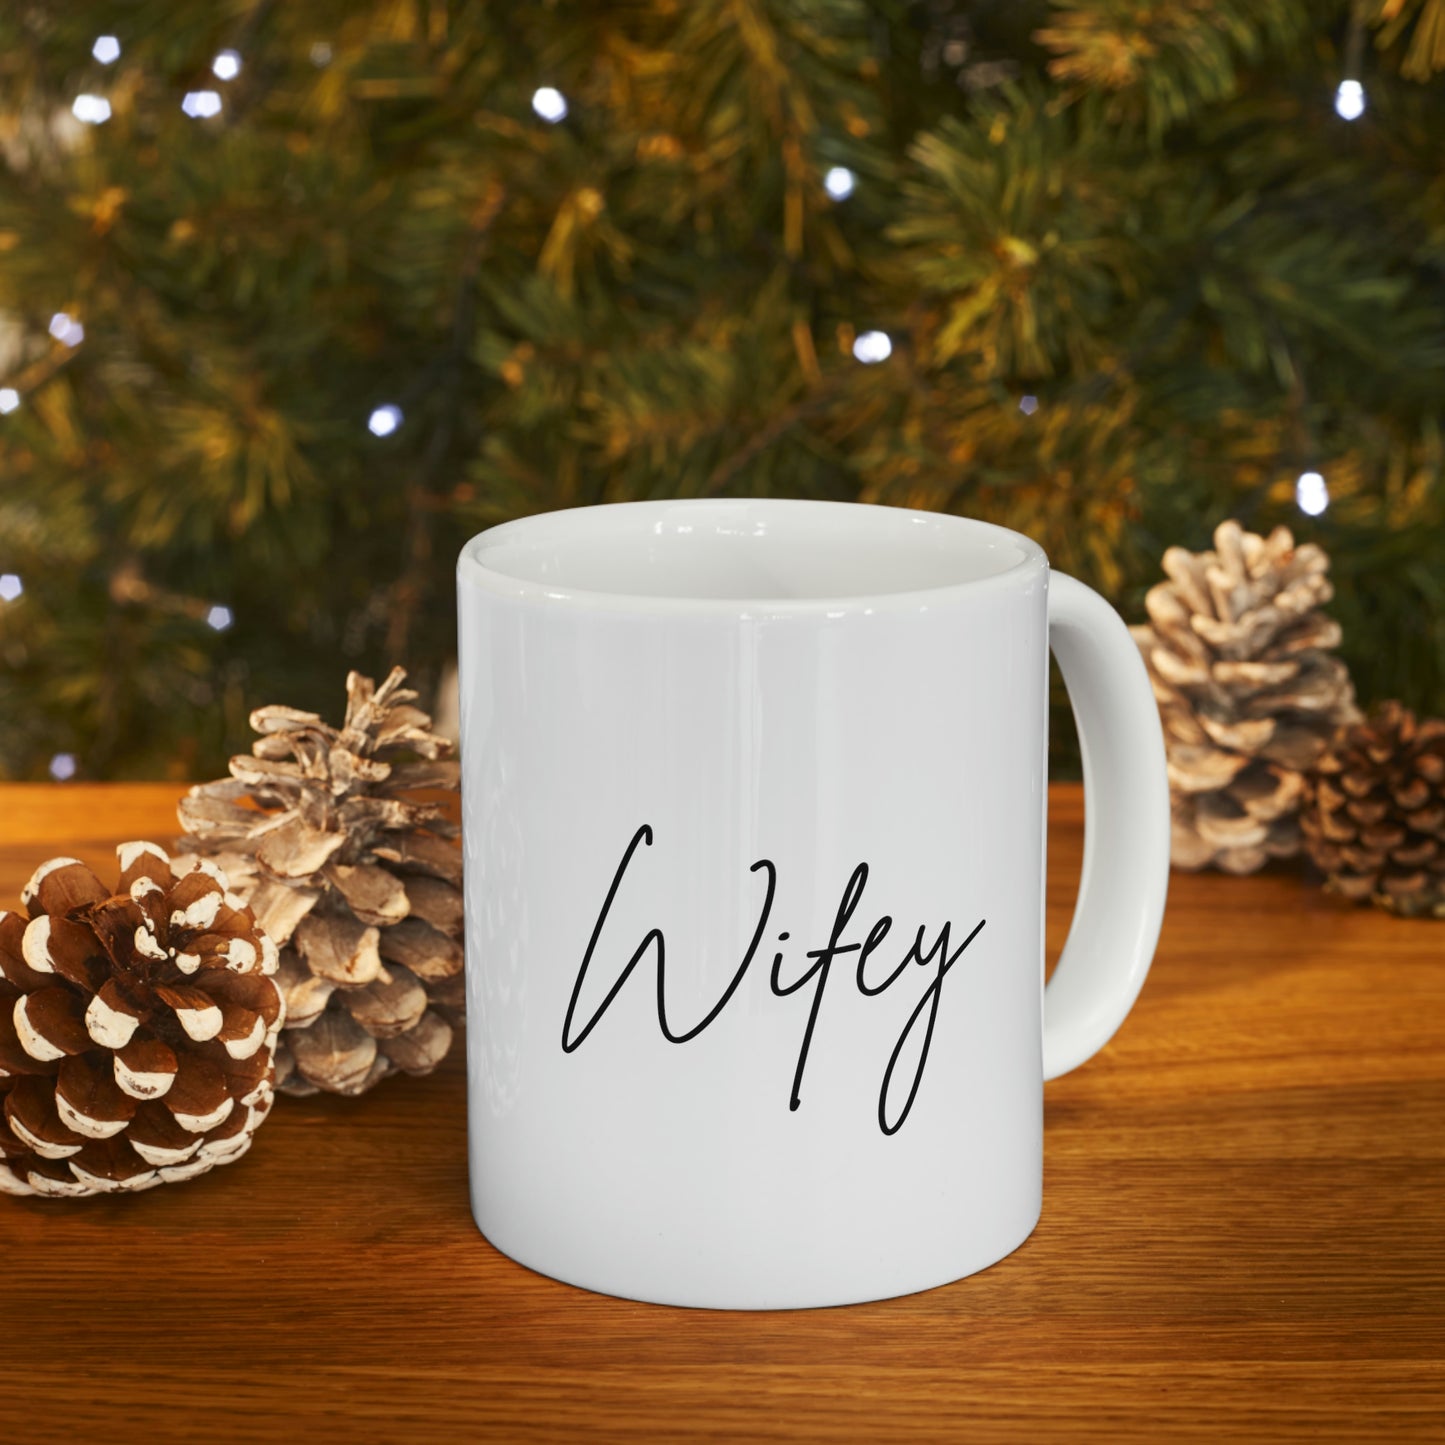 Wifey Ceramic Mug 11oz